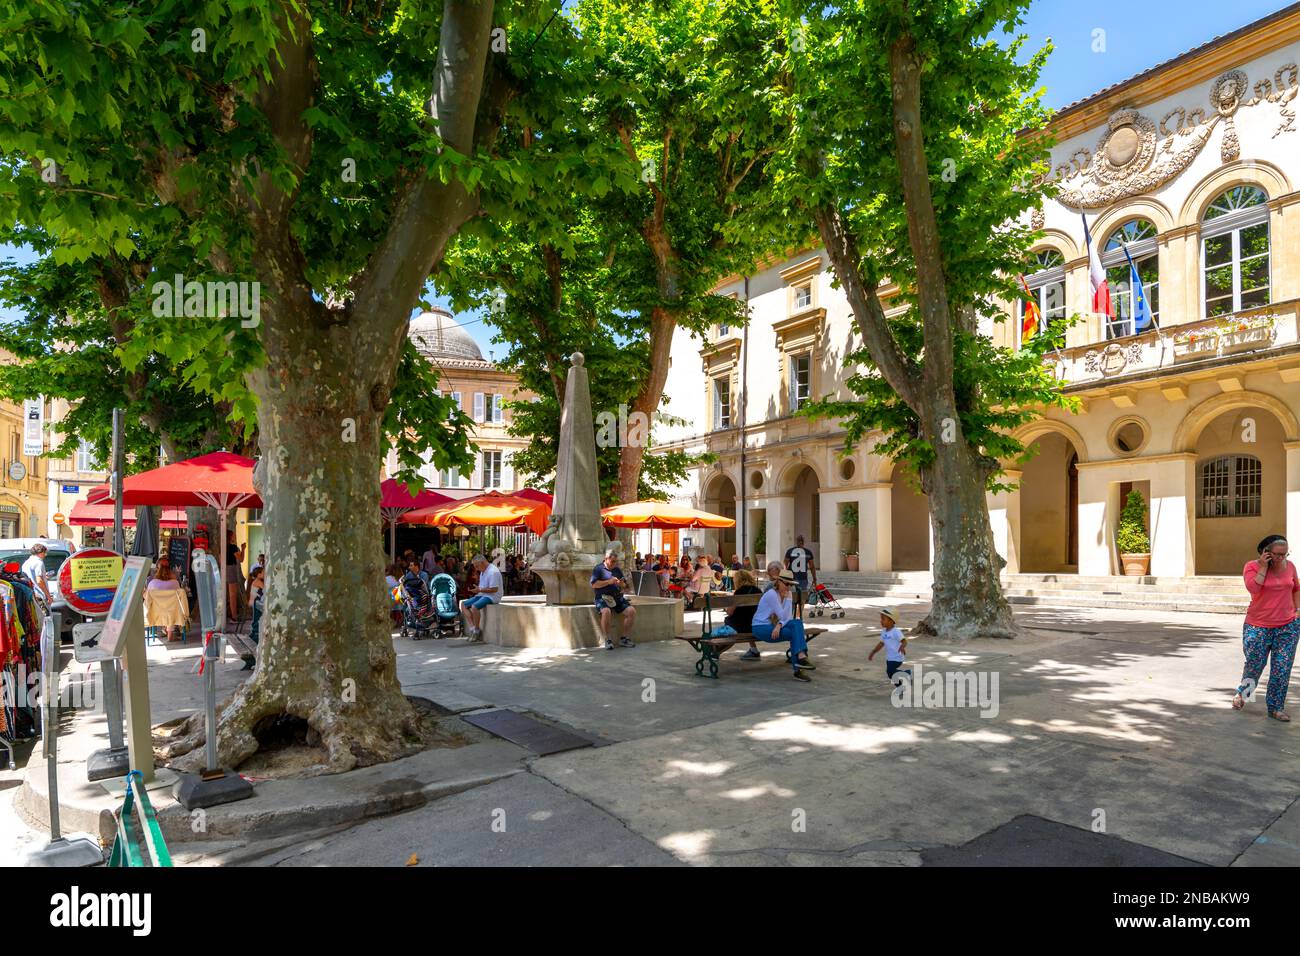 Une des nombreuses rues typiques et de petites places avec des cafés et des boutiques dans la ville historique de Saint-Rémy-de-Provence lors d'une belle journée d'été. Banque D'Images